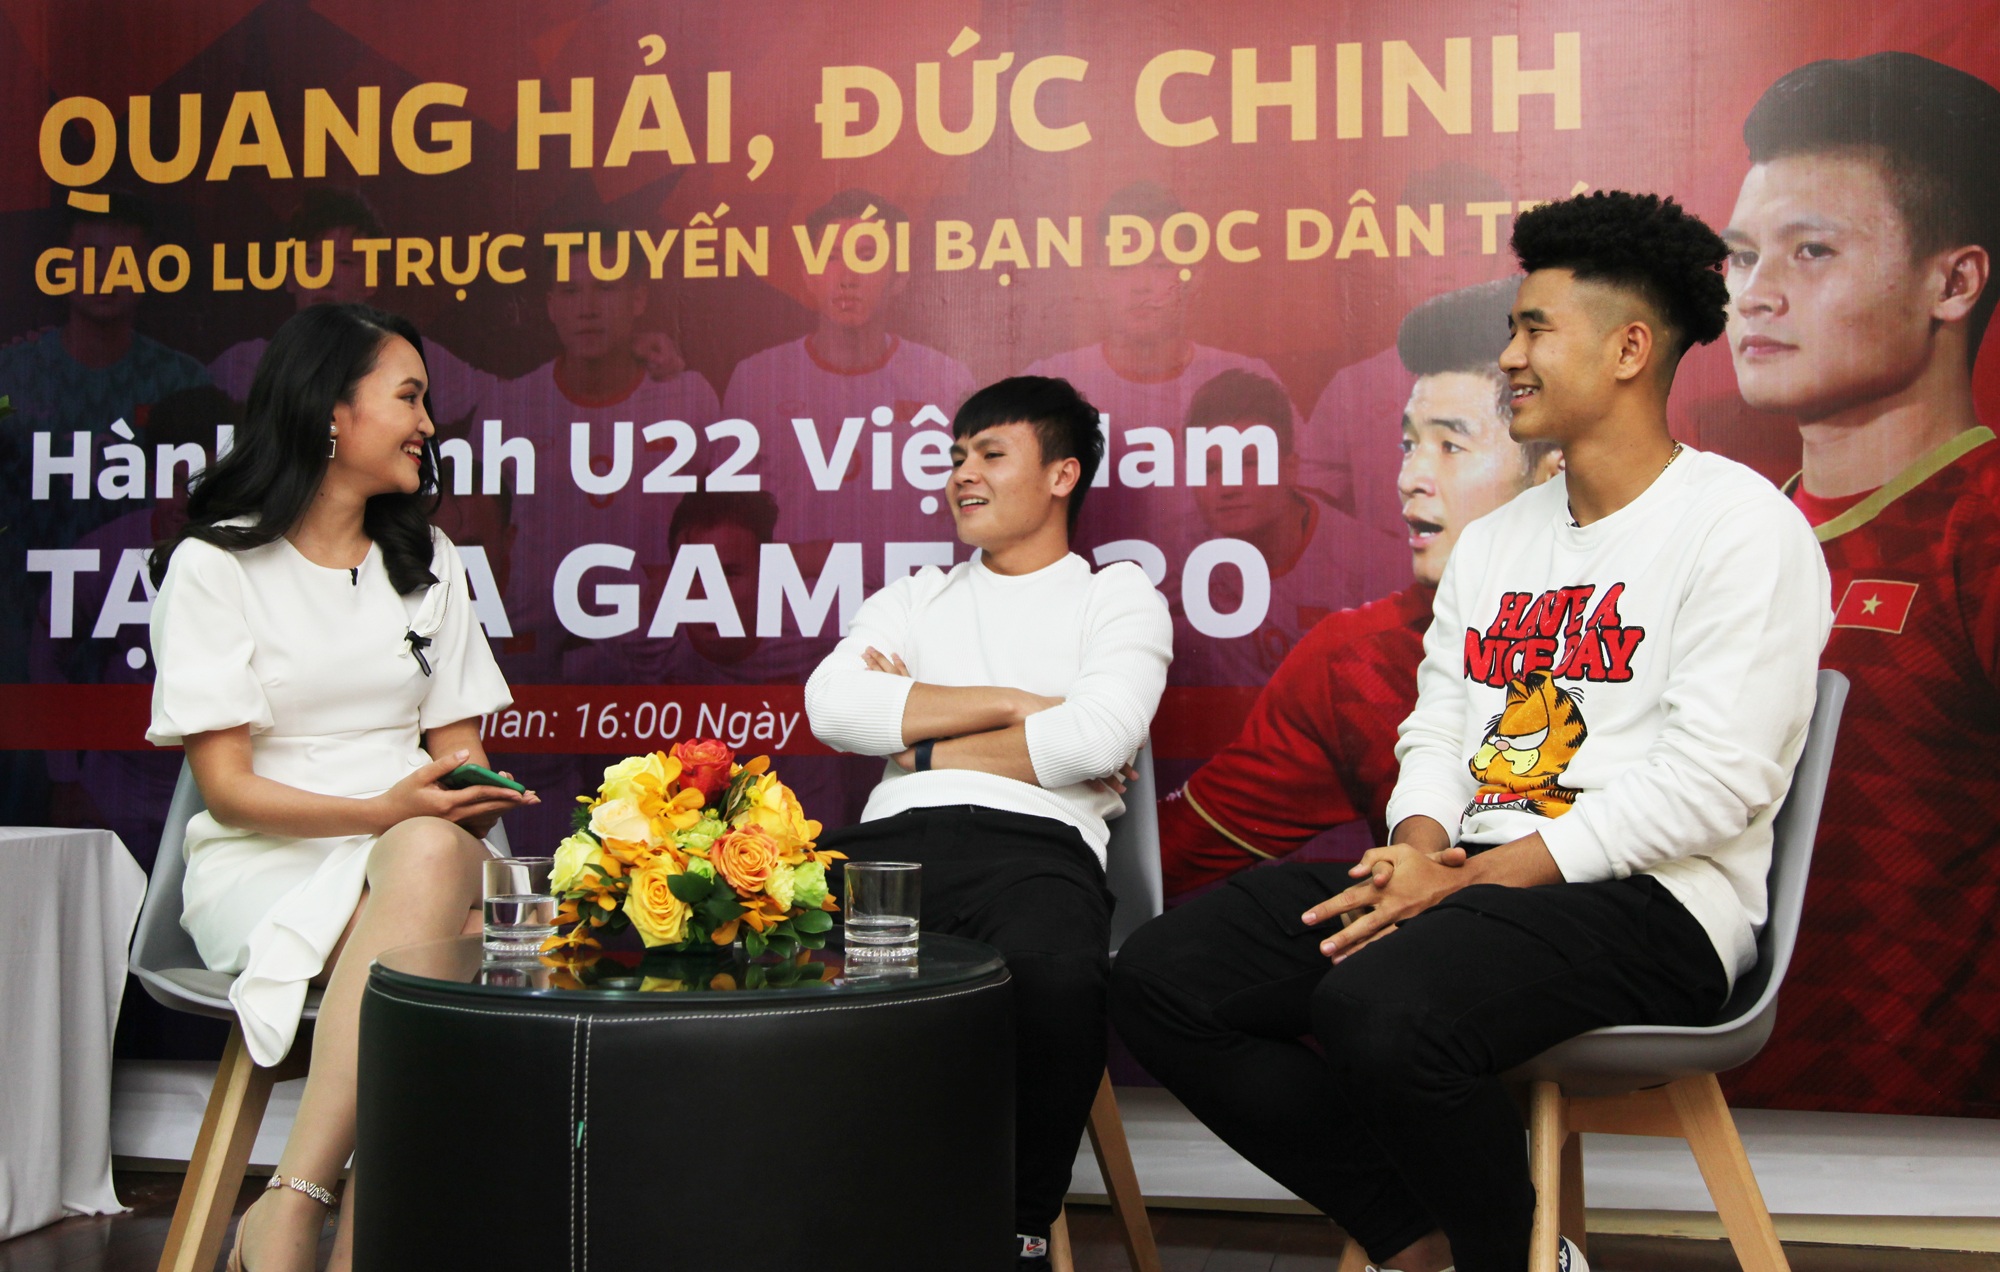 Quang Hải: "Tôi và các đồng đội đã sẵn sàng cho giải U23 châu Á"